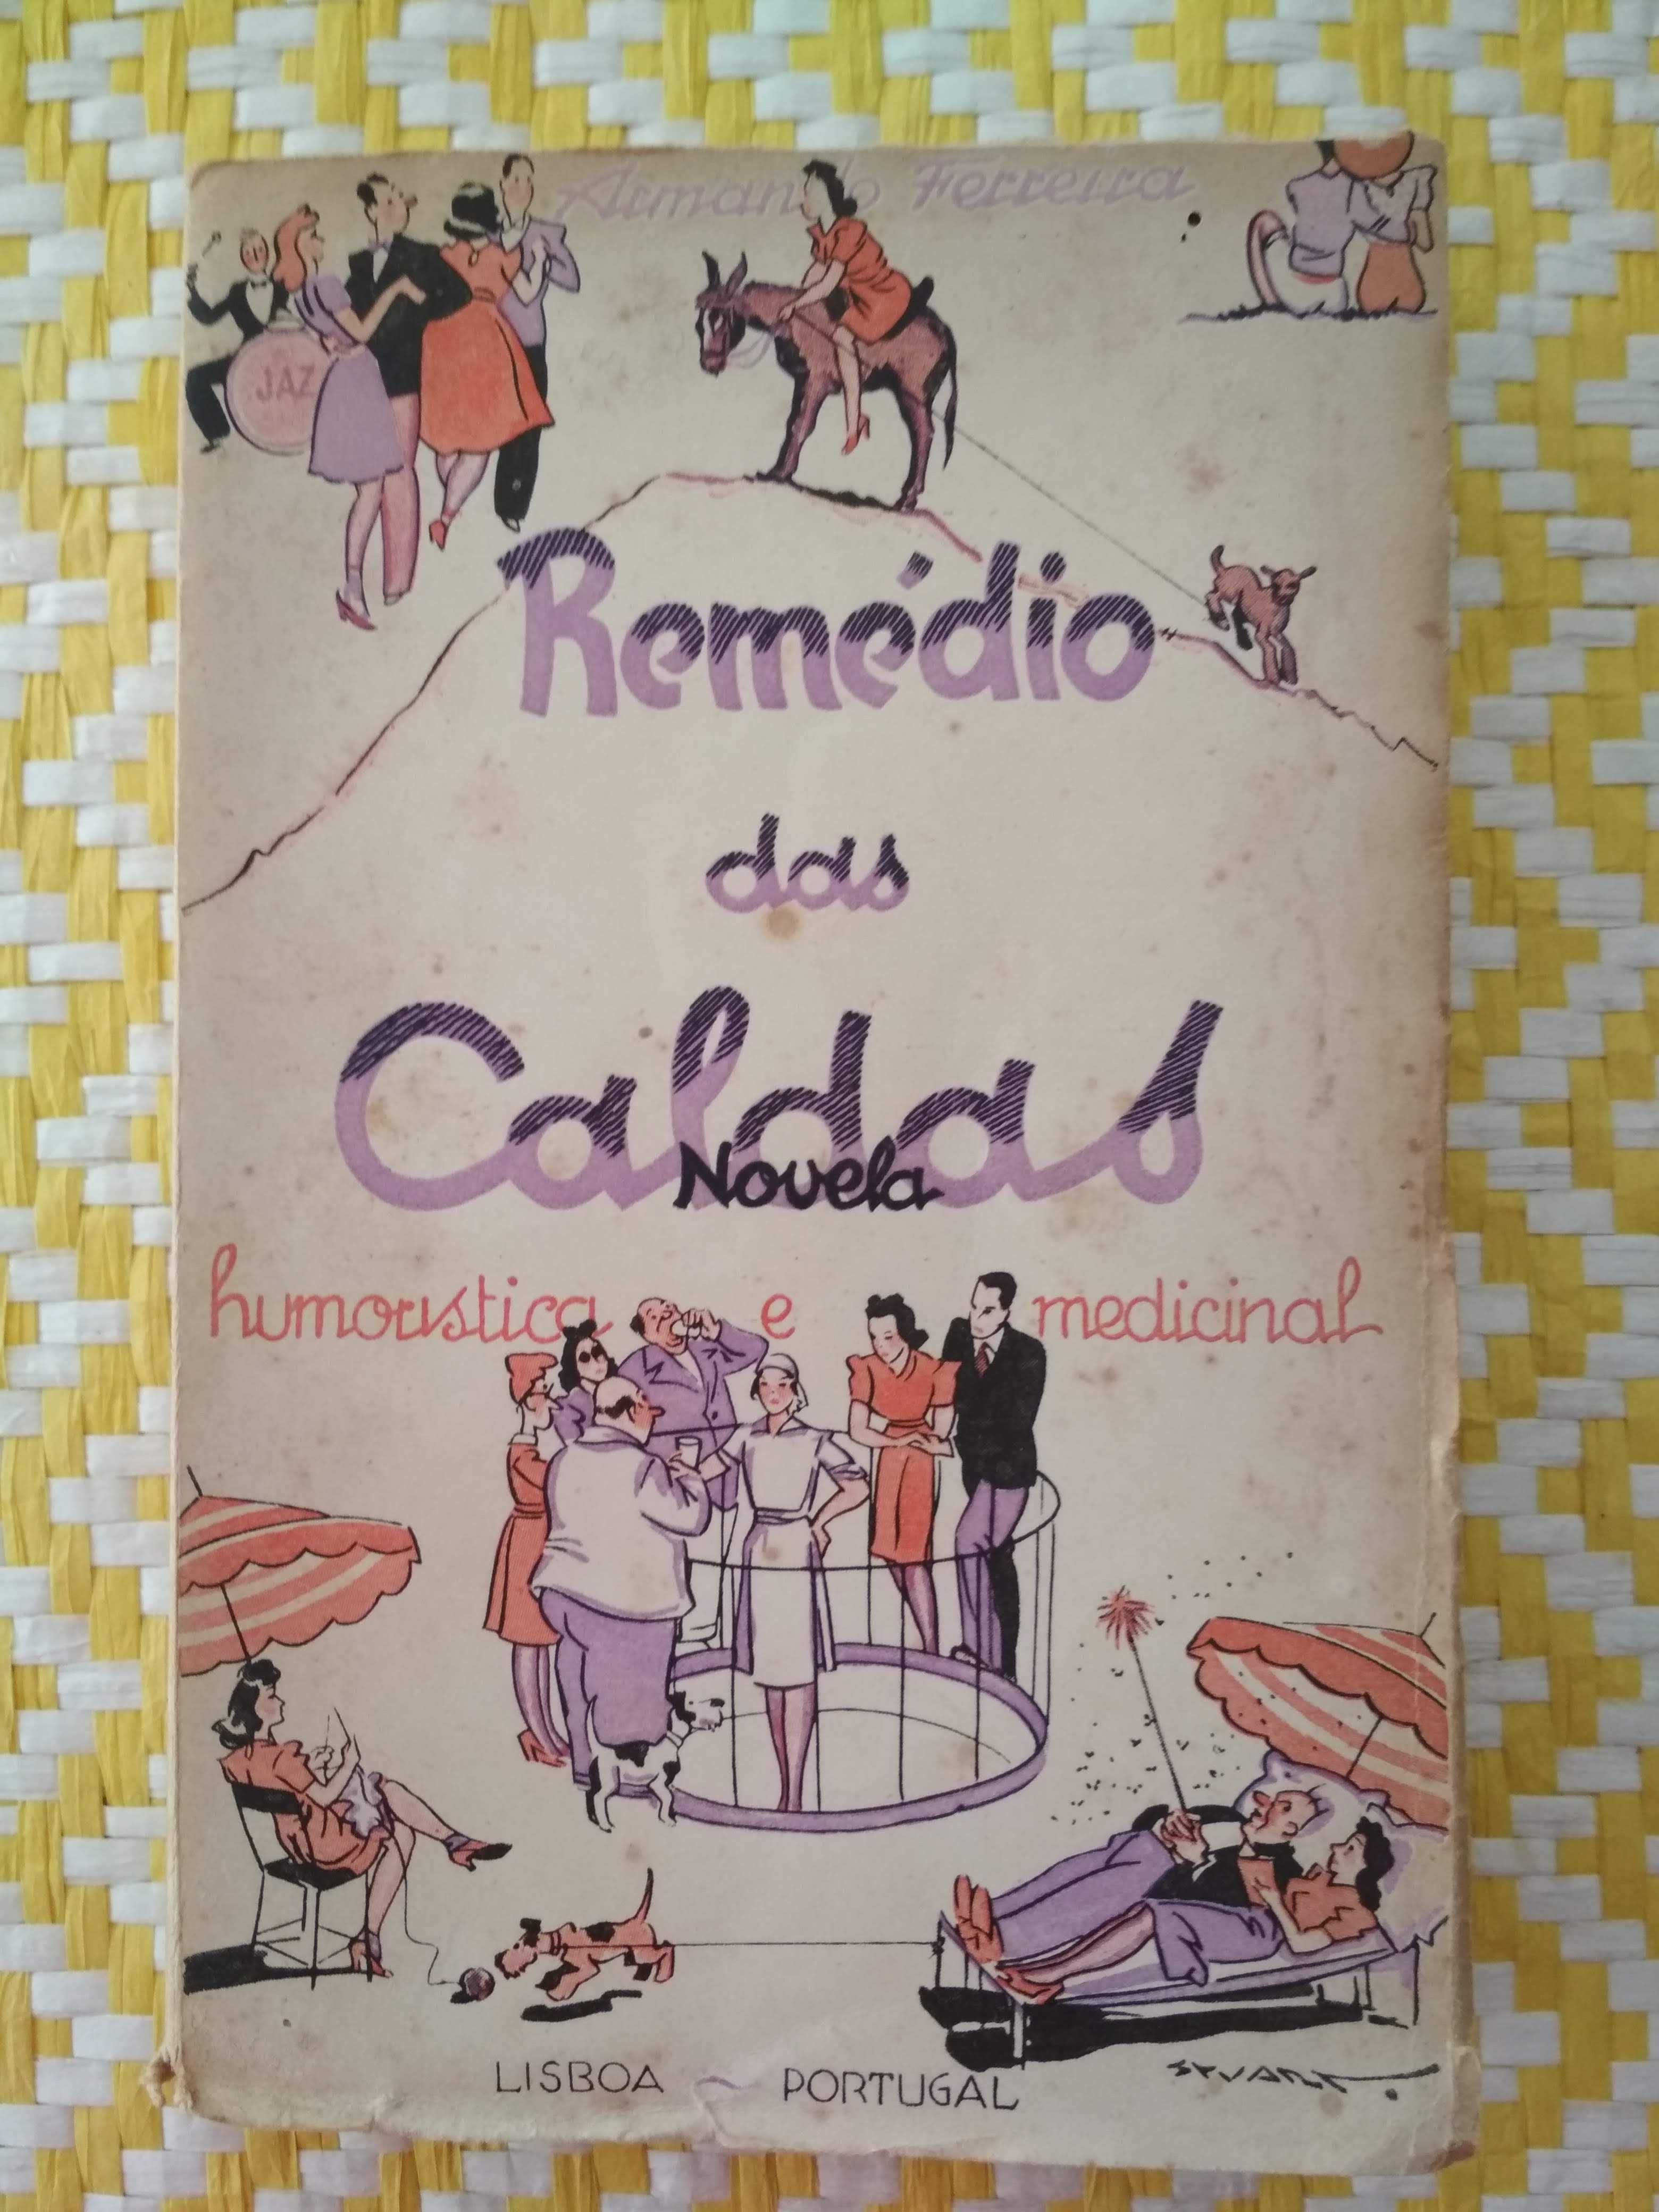 REMÉDIO DAS CALDAS
Novela Humorística e medicinal.